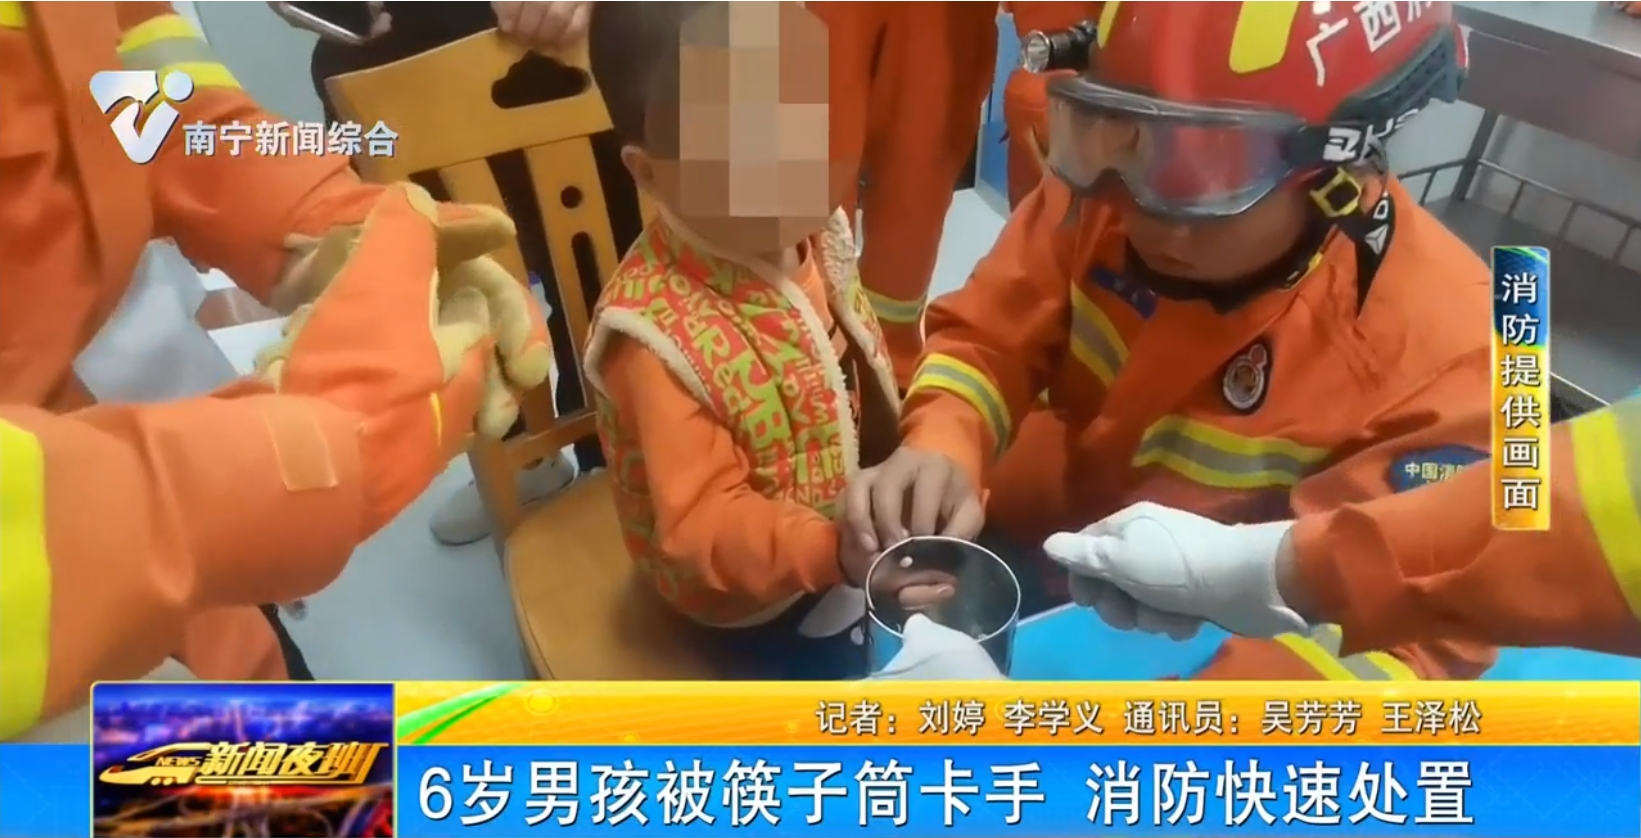 6岁男孩被筷子筒卡手 消防快速处置 